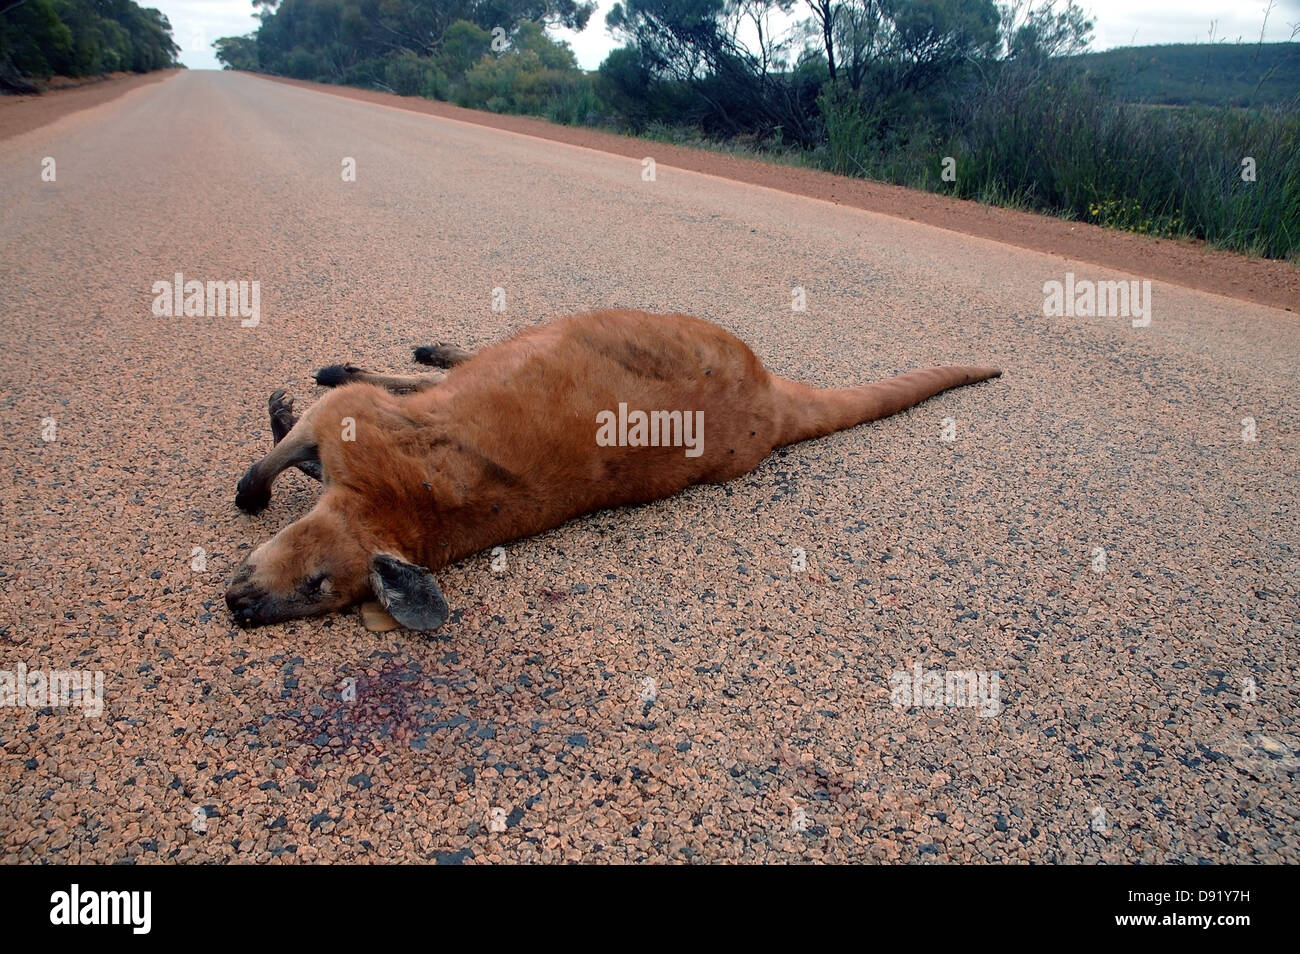 Large kangaroo (Macropus sp.) killed on road, Western Australia Stock Photo